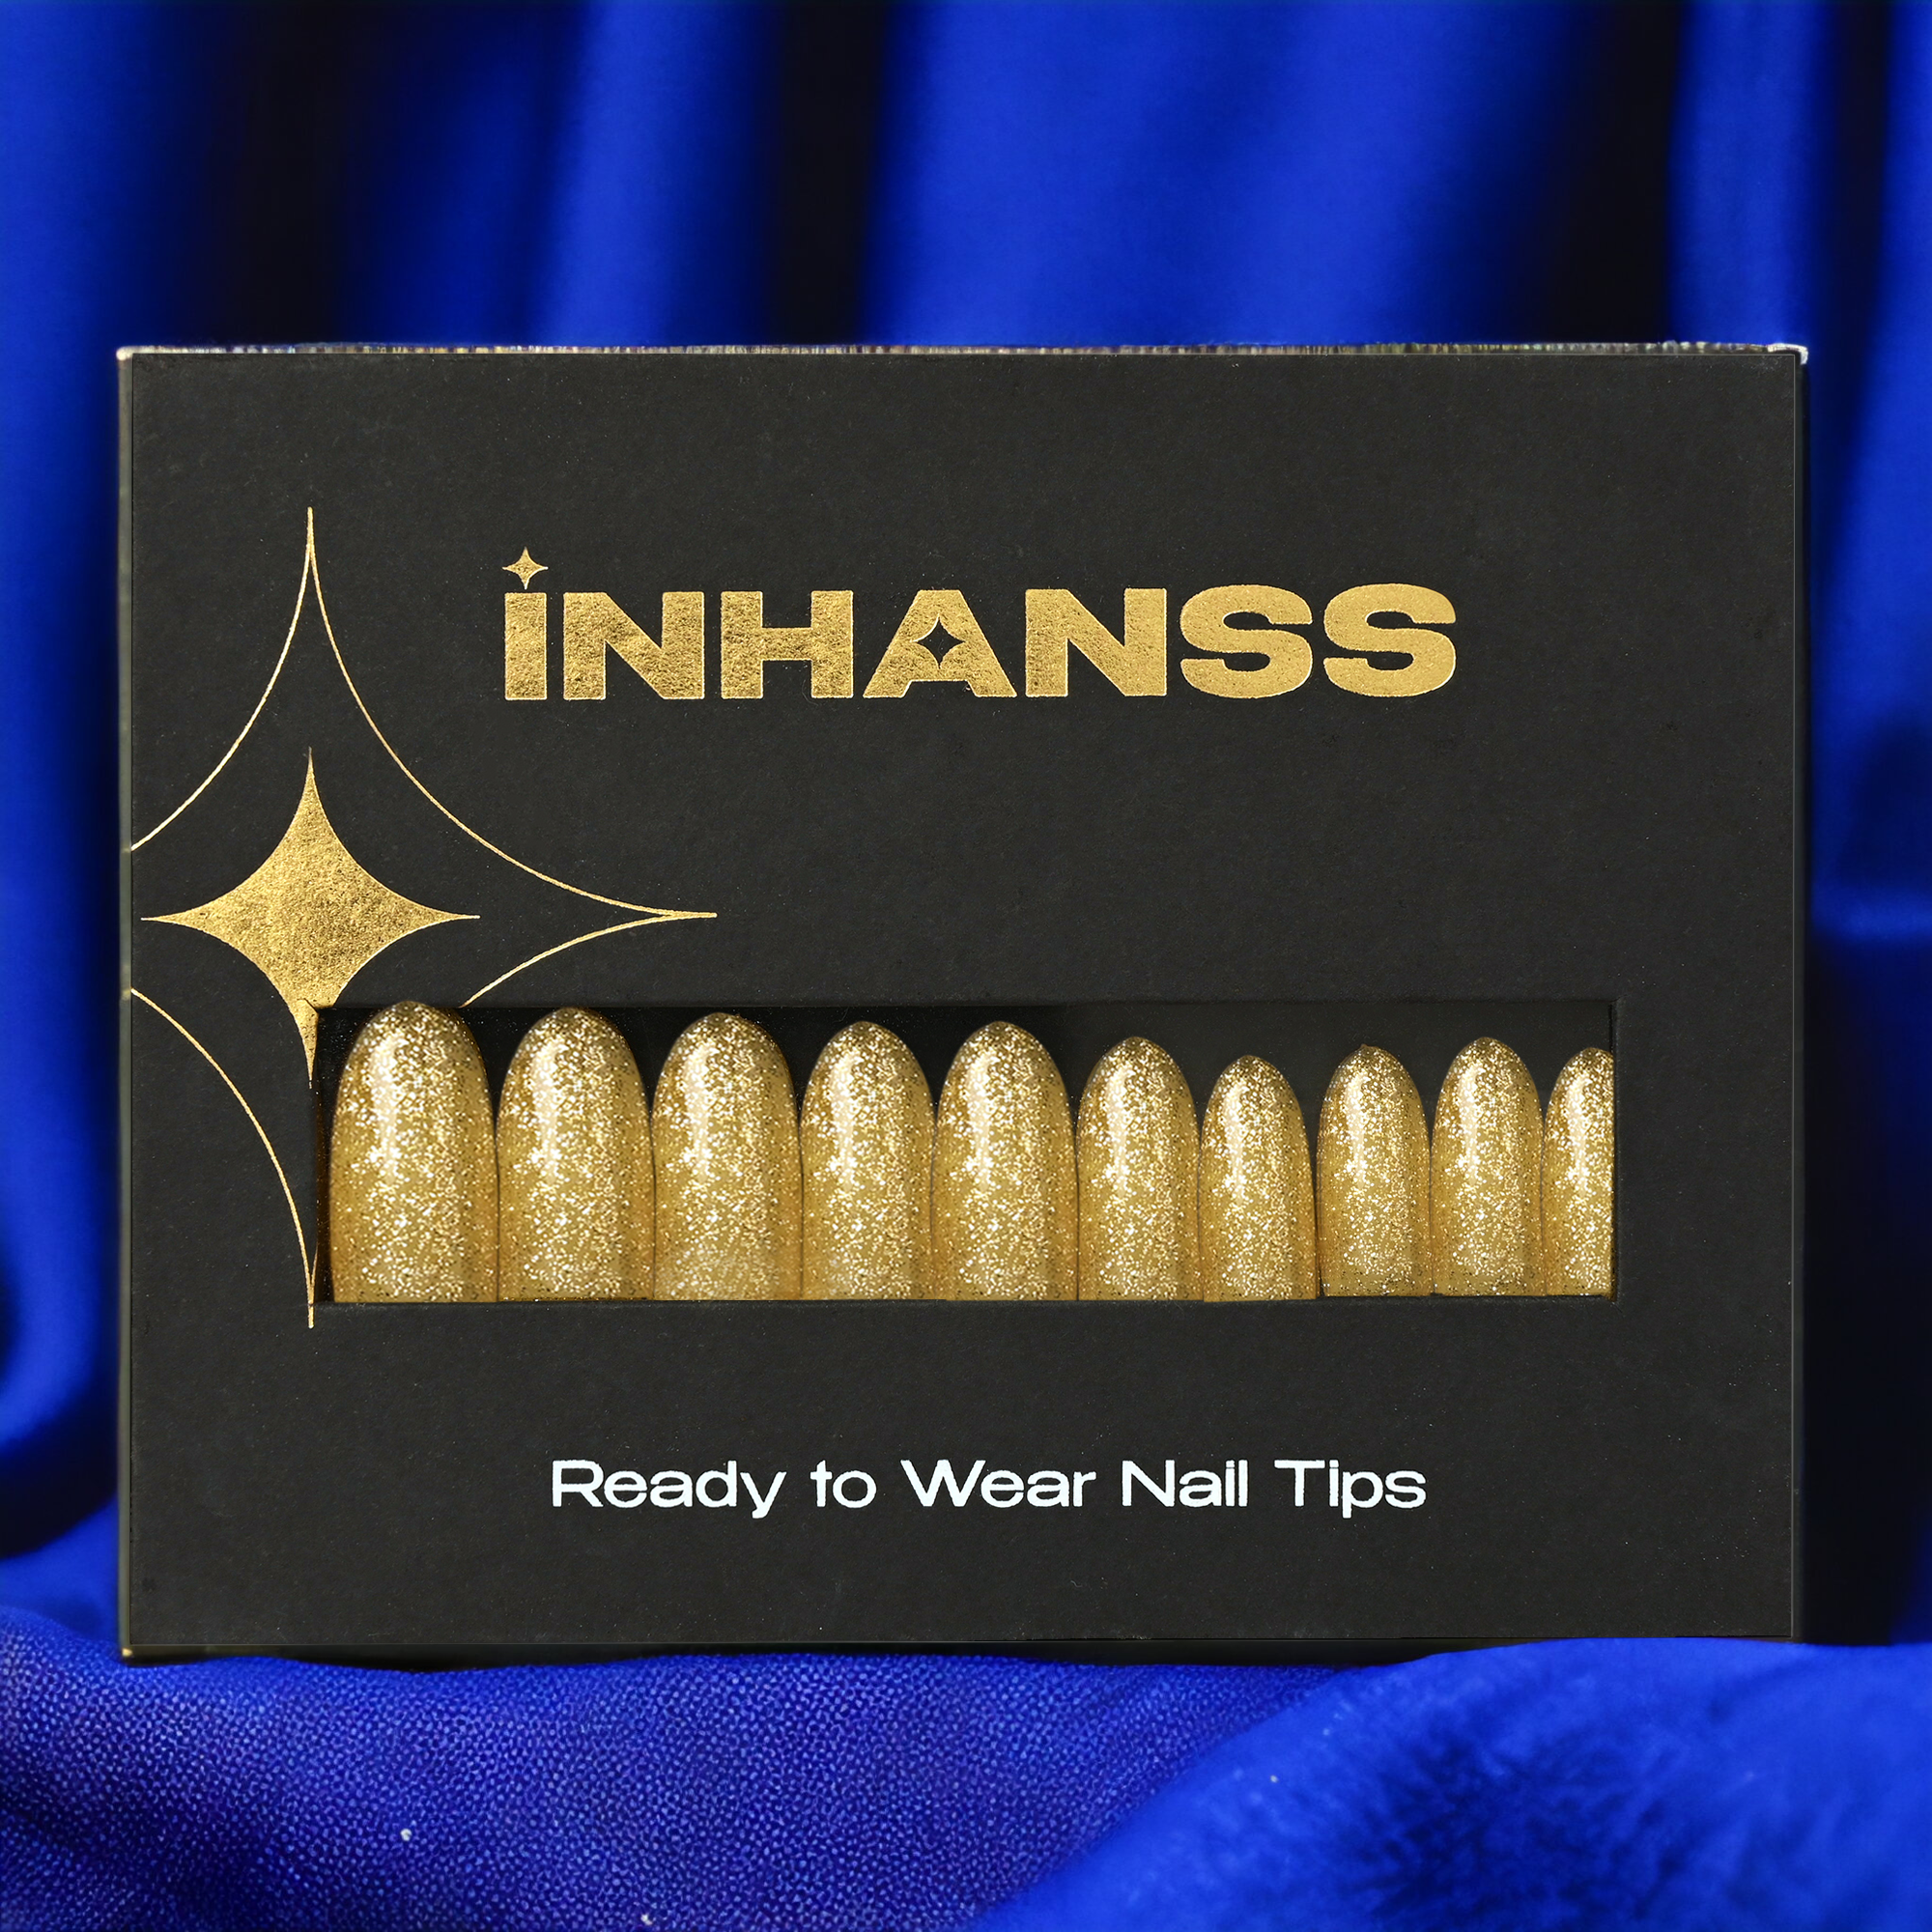 Handmade Reusable Premium Press on Nail Art Kit : Glittery Golden